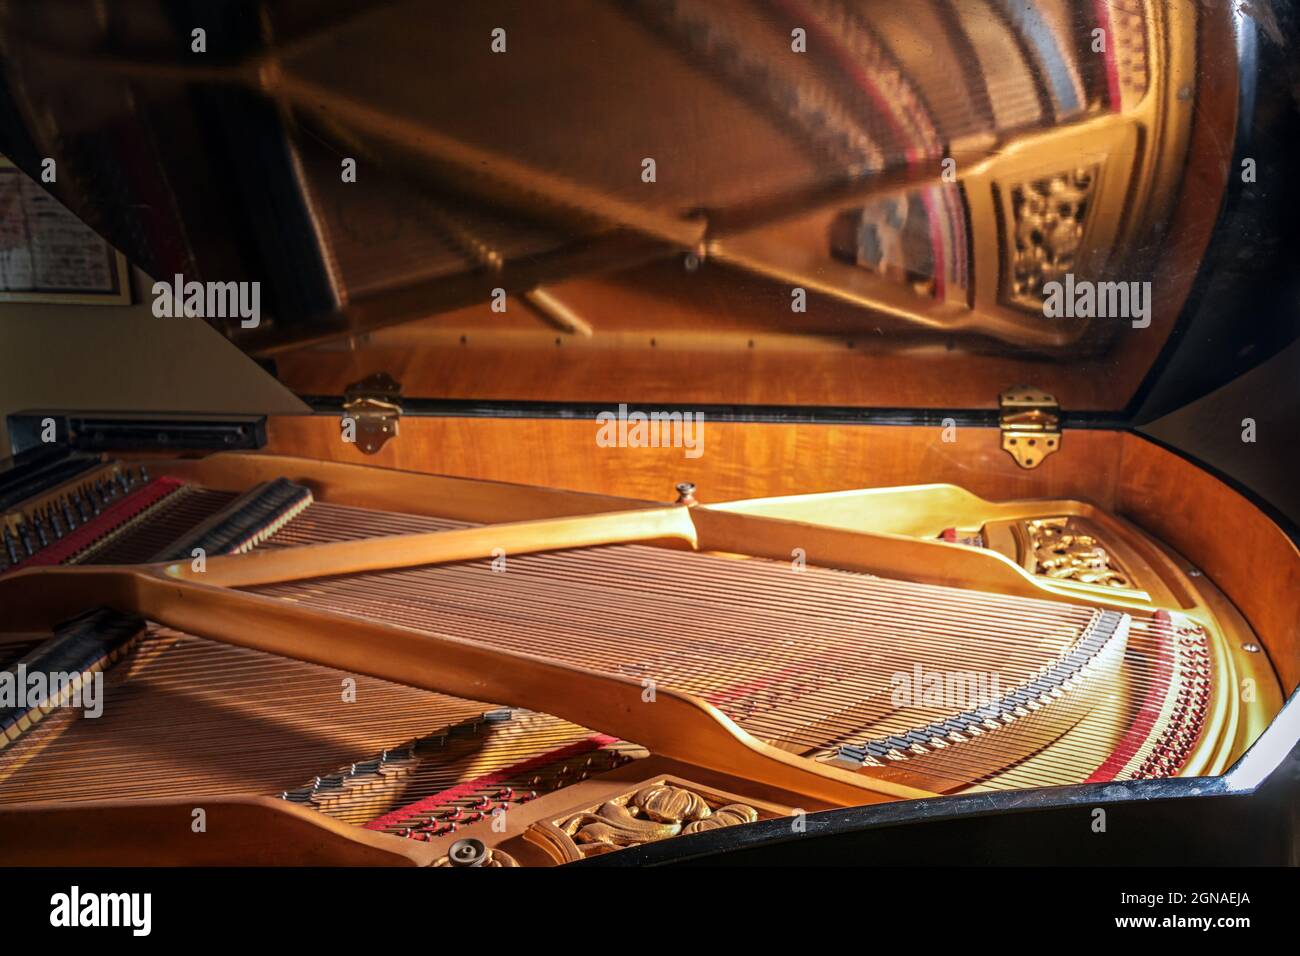 All'interno di un pianoforte con specchio di cornici e archi nel coperchio aperto dello strumento musicale, concetto per musica, arte e intrattenimento, selecte Foto Stock